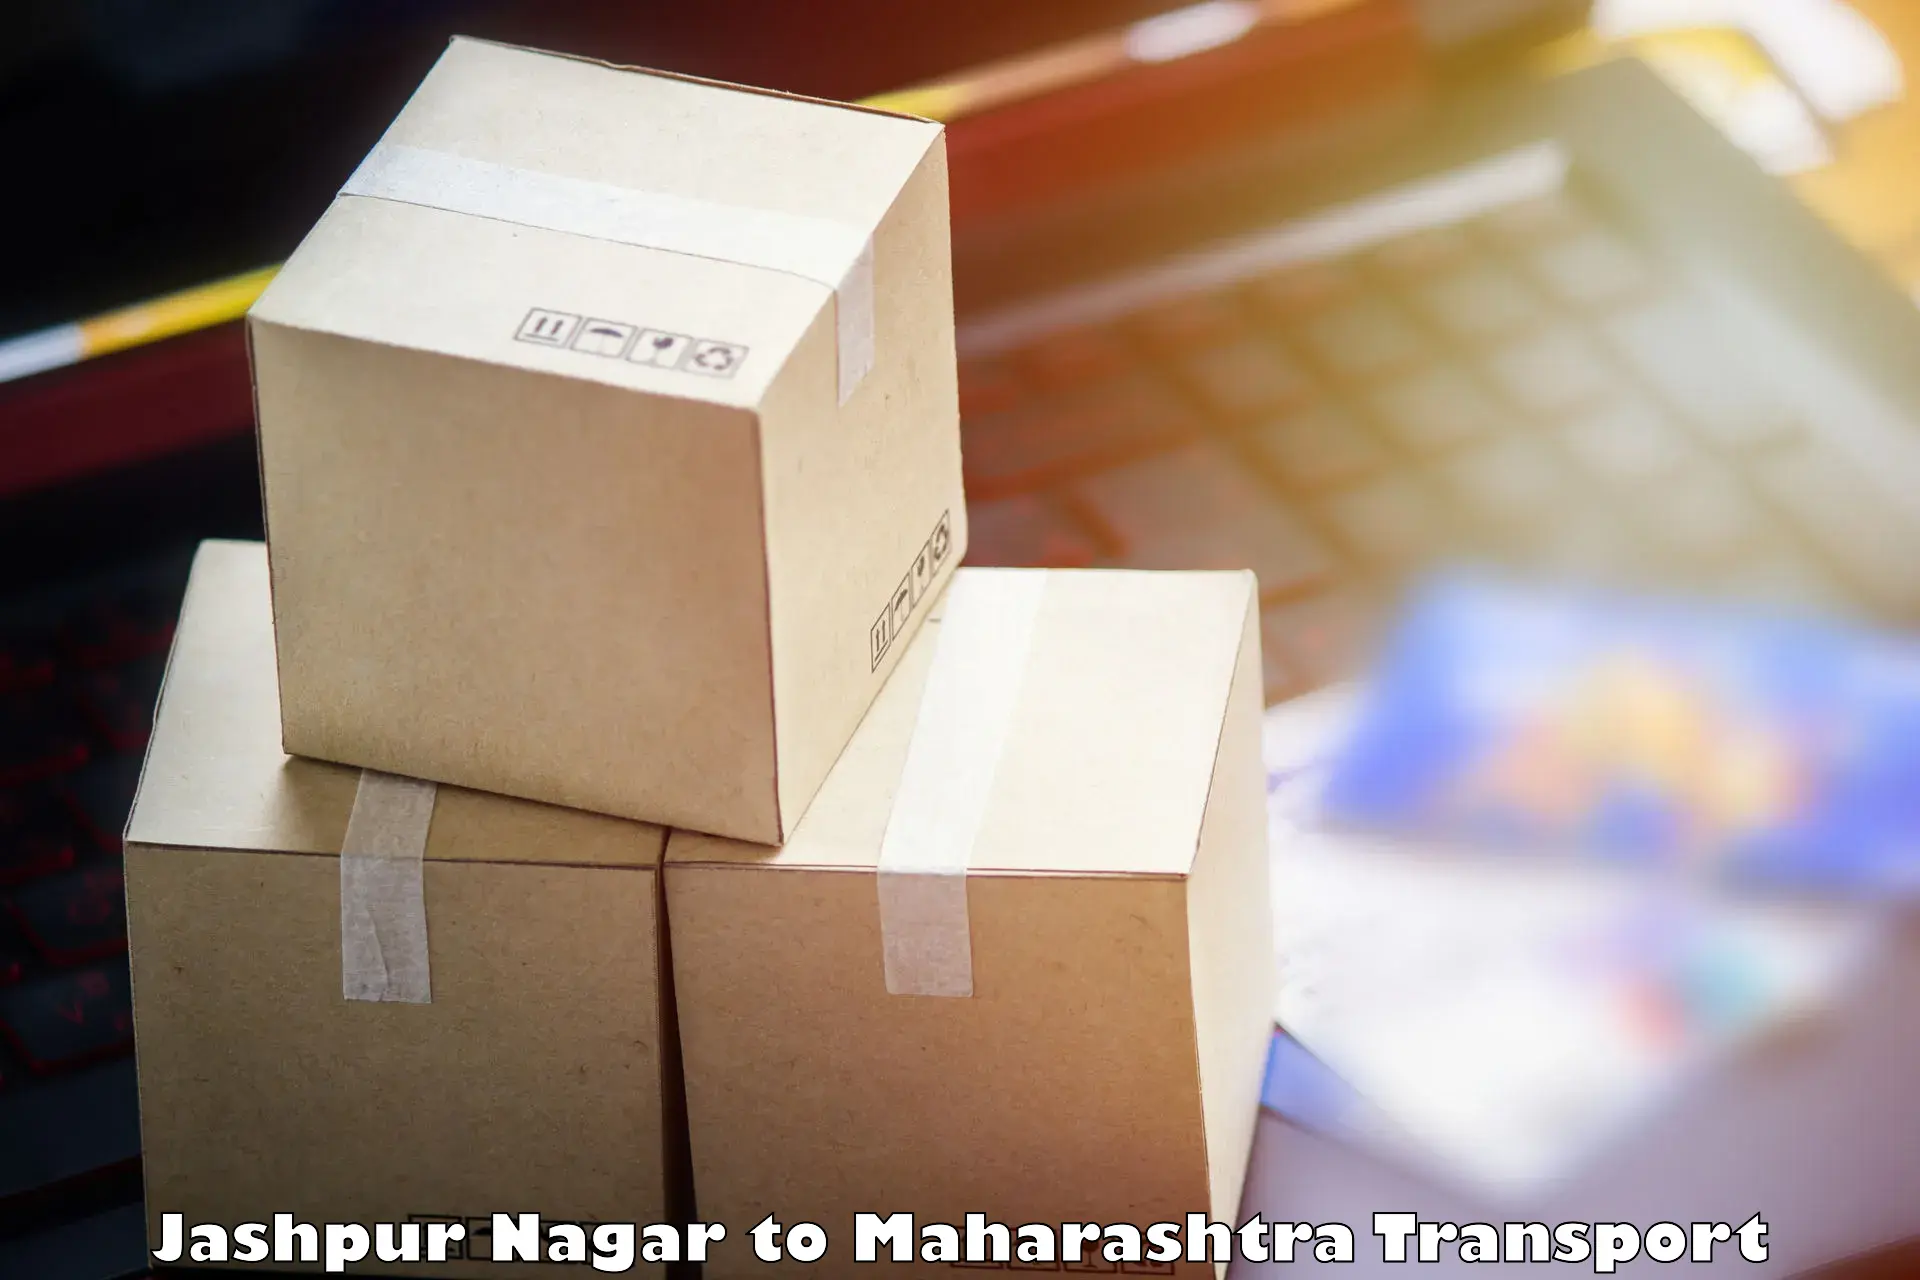 Pick up transport service Jashpur Nagar to Rahimatpur